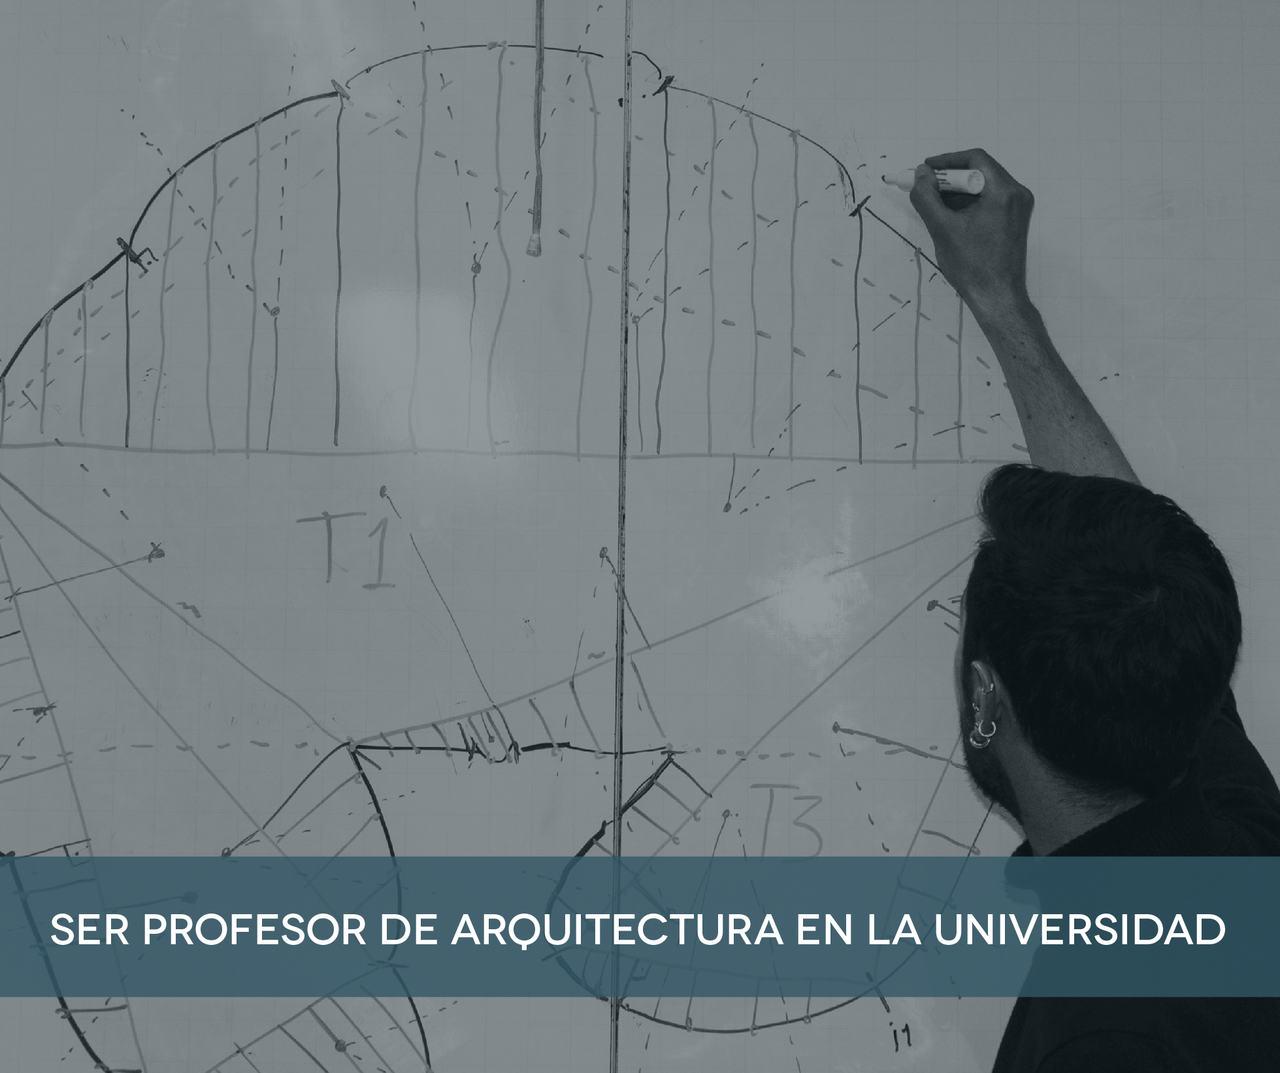 Ser profesor de arquitectura en la universidad: un equilibrio sobre tres patas